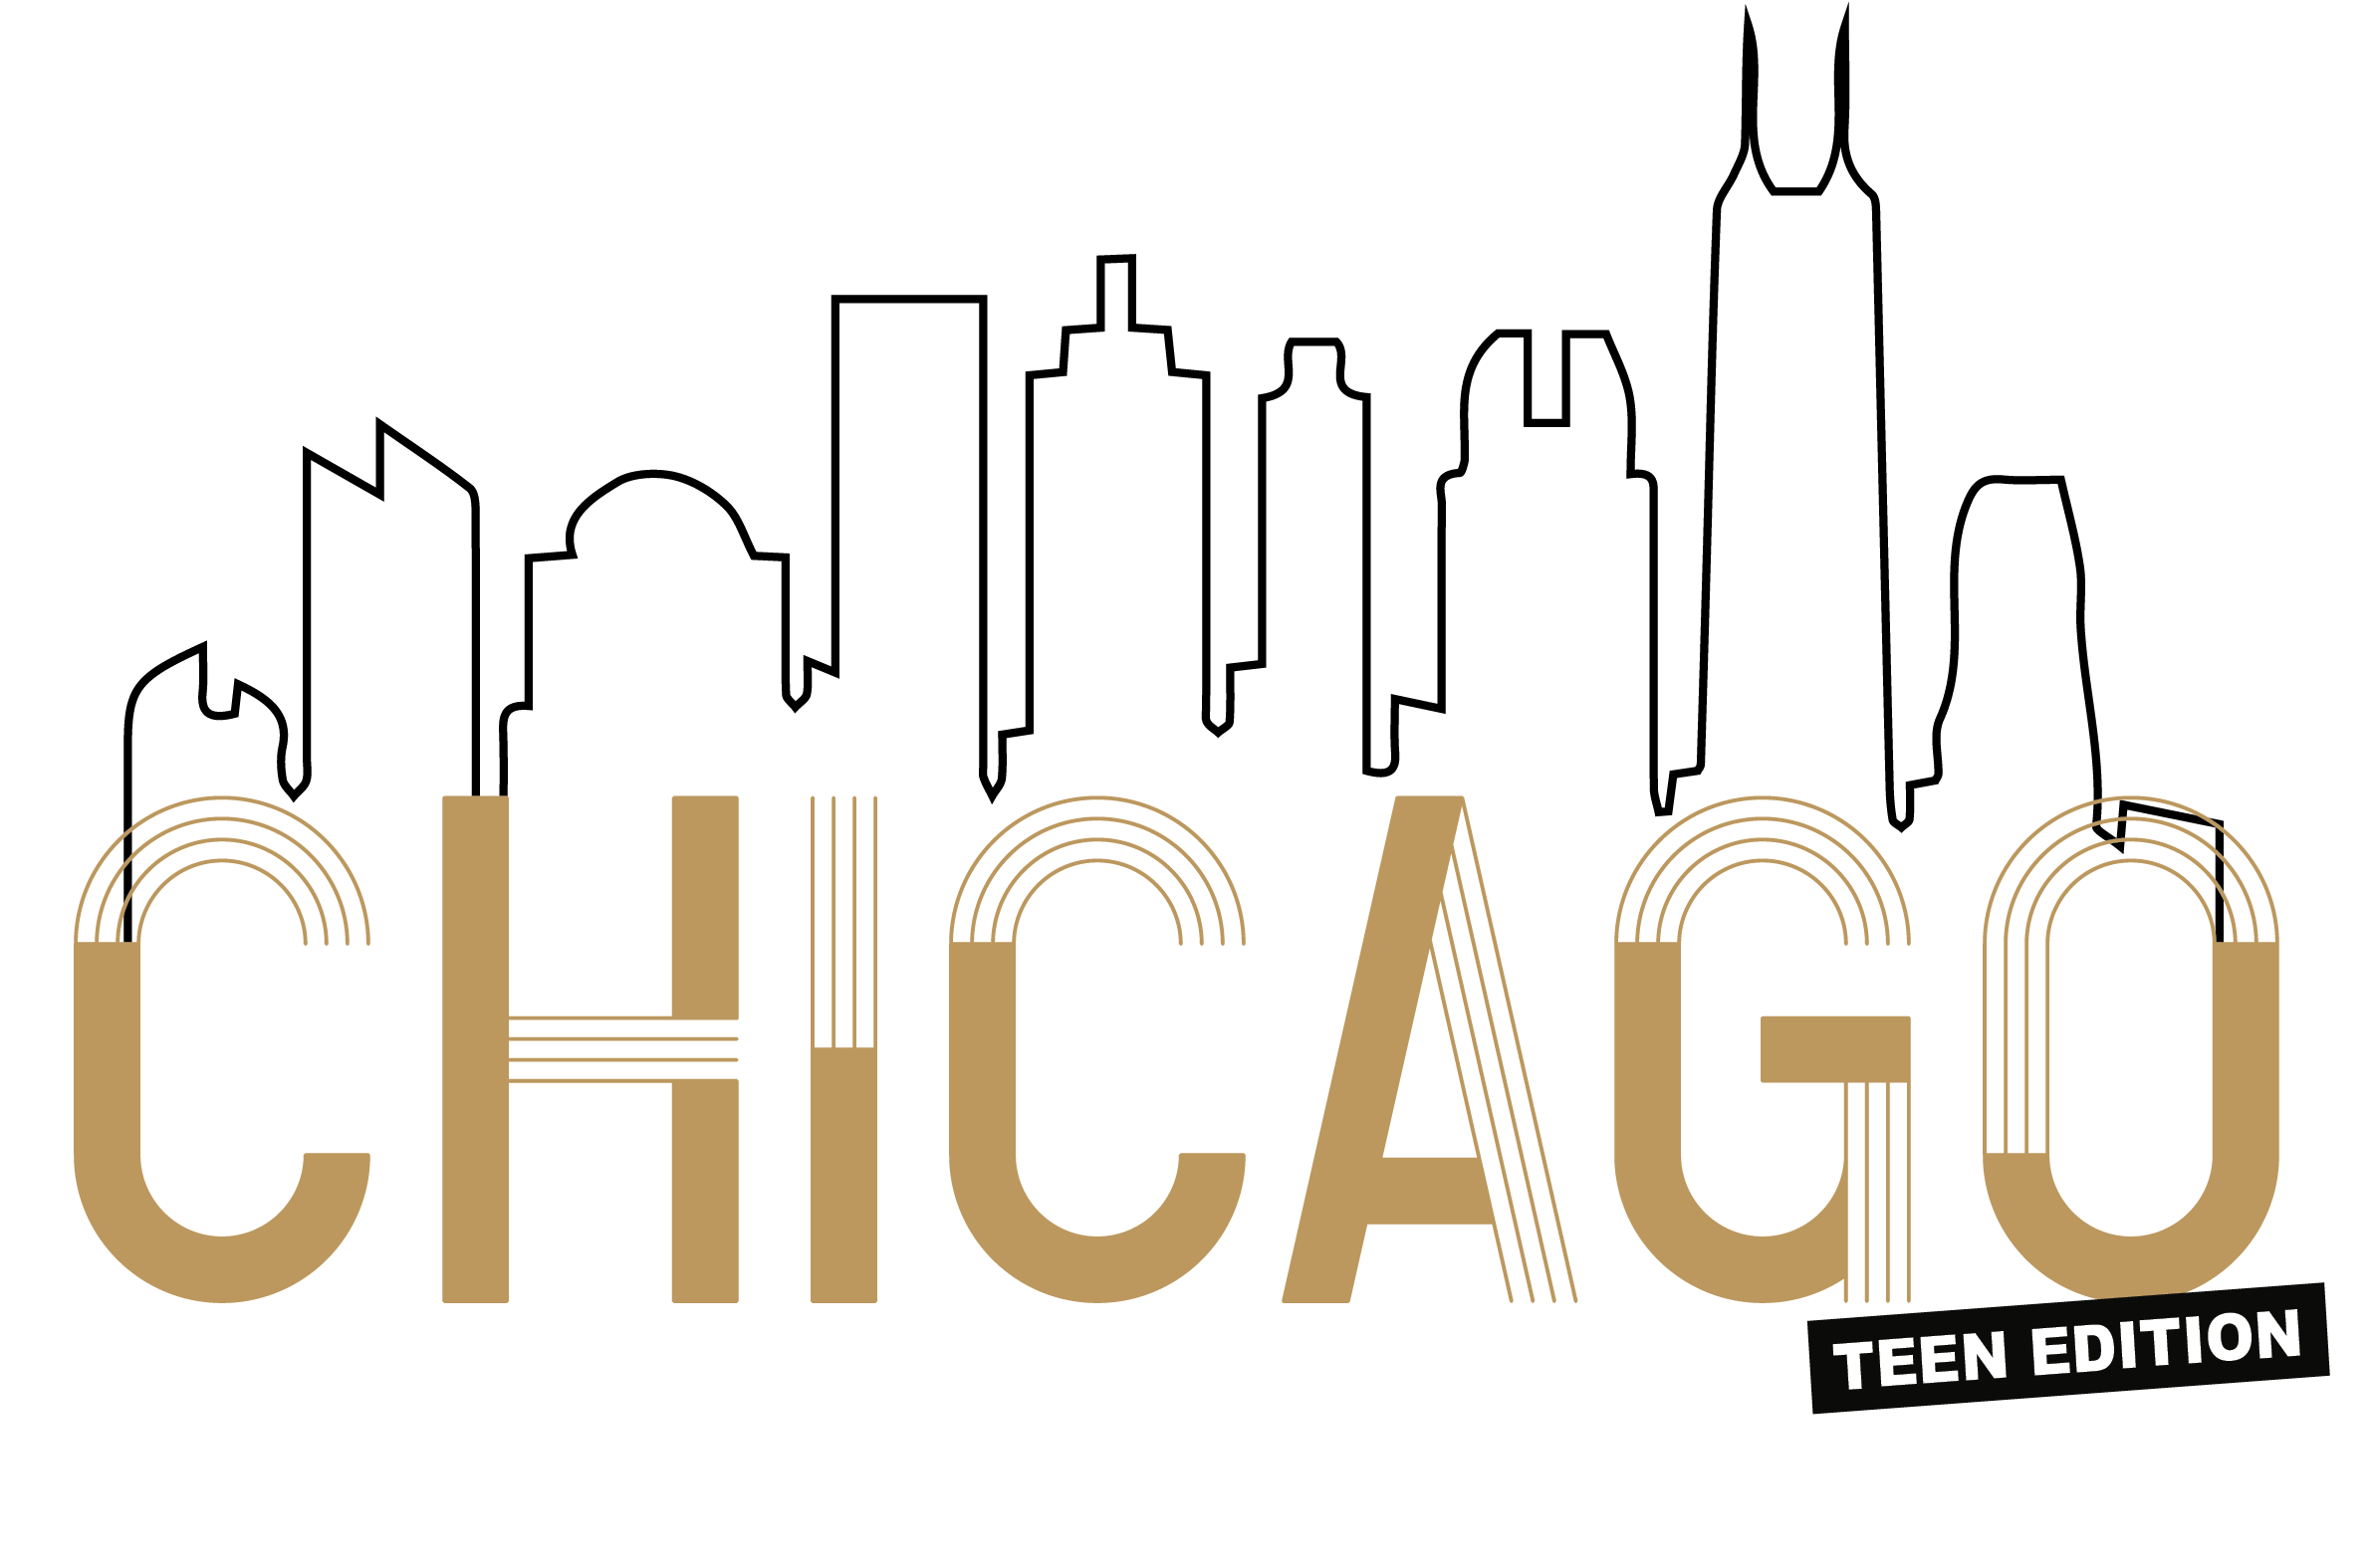 Chicago Teen Edition logo